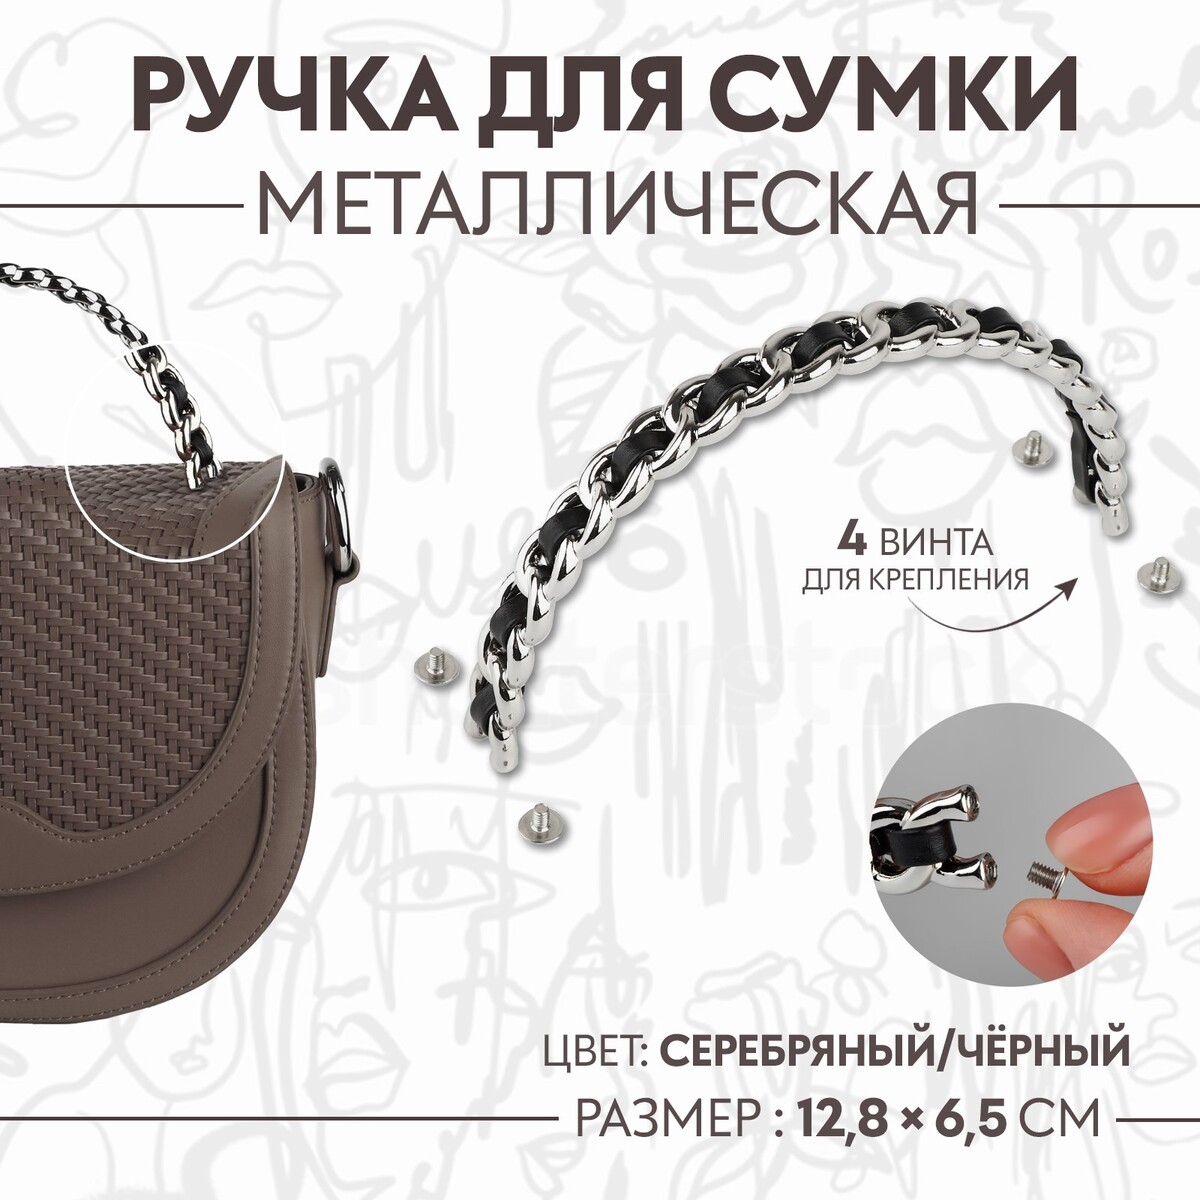 Ручка для сумки, металлическая, с винтами для крепления, 12,8 × 6,5 см, цвет серебряный/черный серебряный шпиль